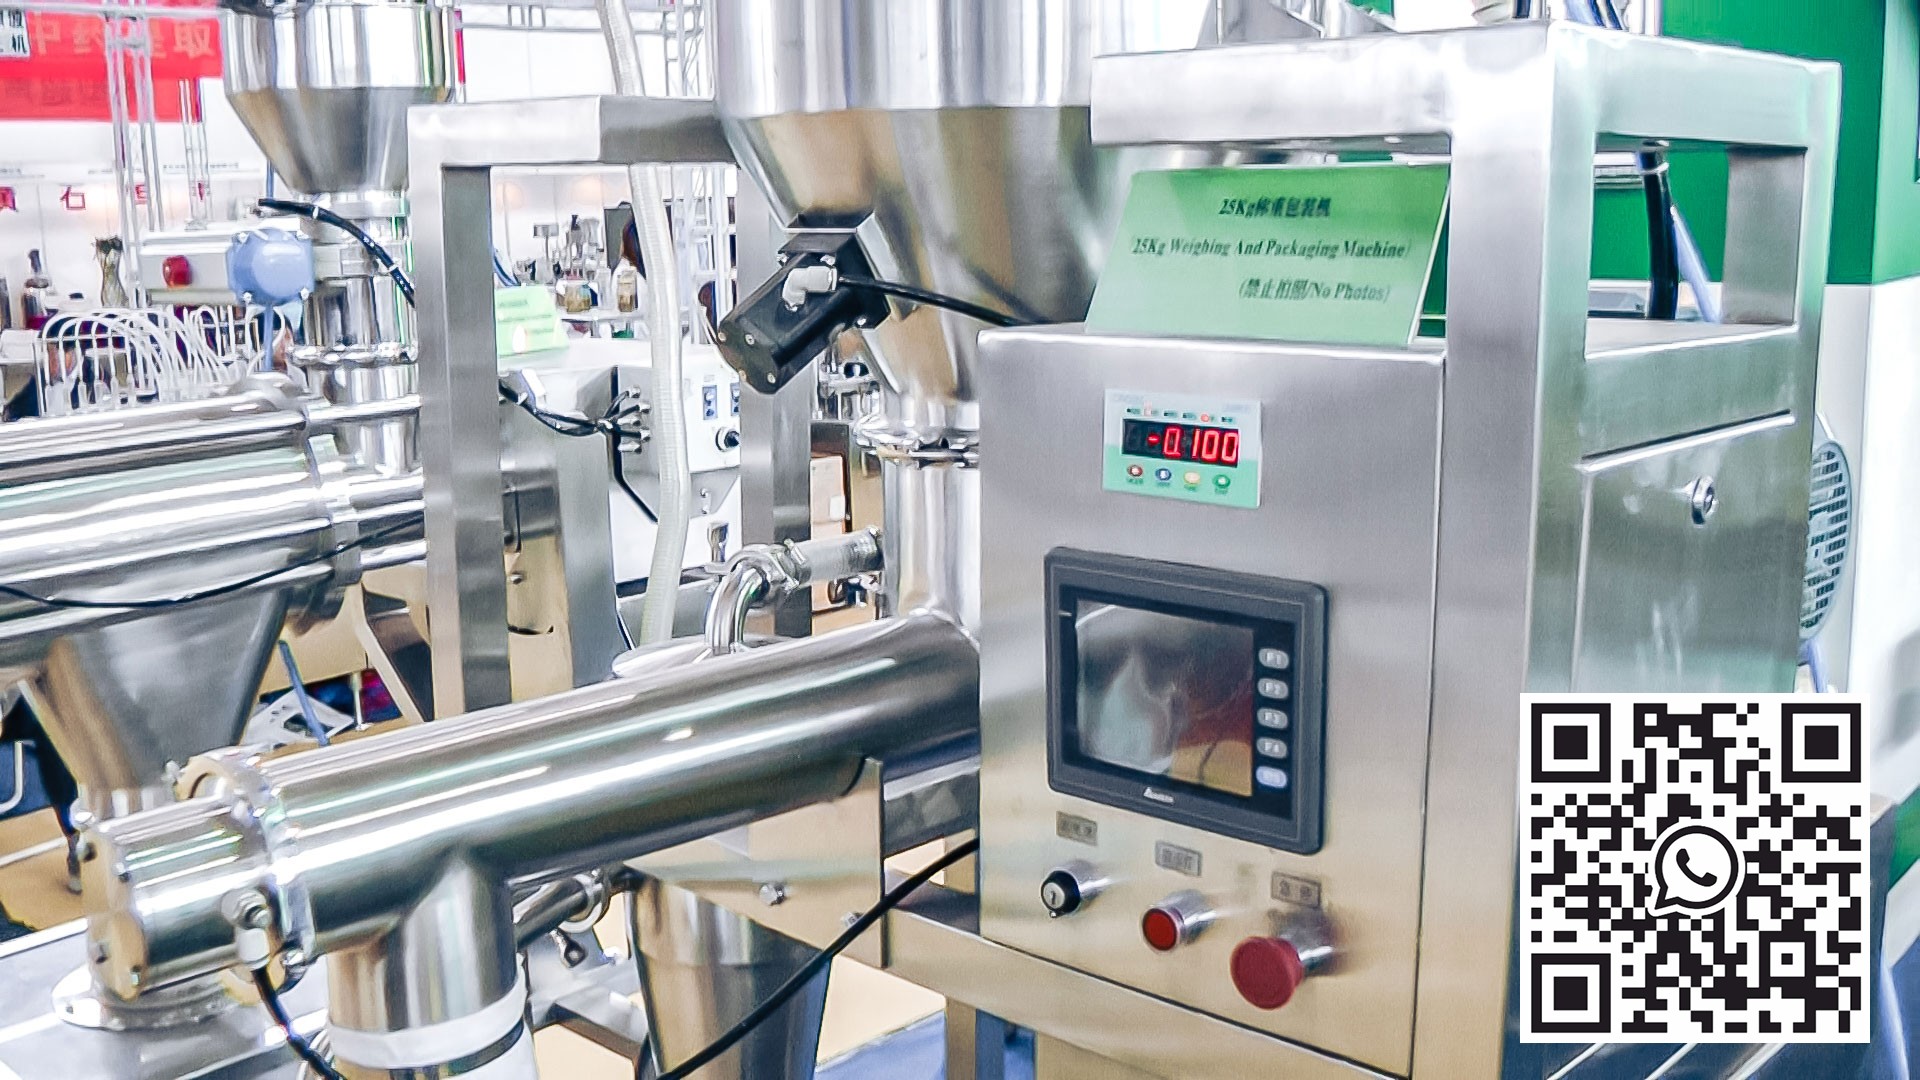 Equipo automático para la preparación y mezcla de polvos en la producción farmacéutica.